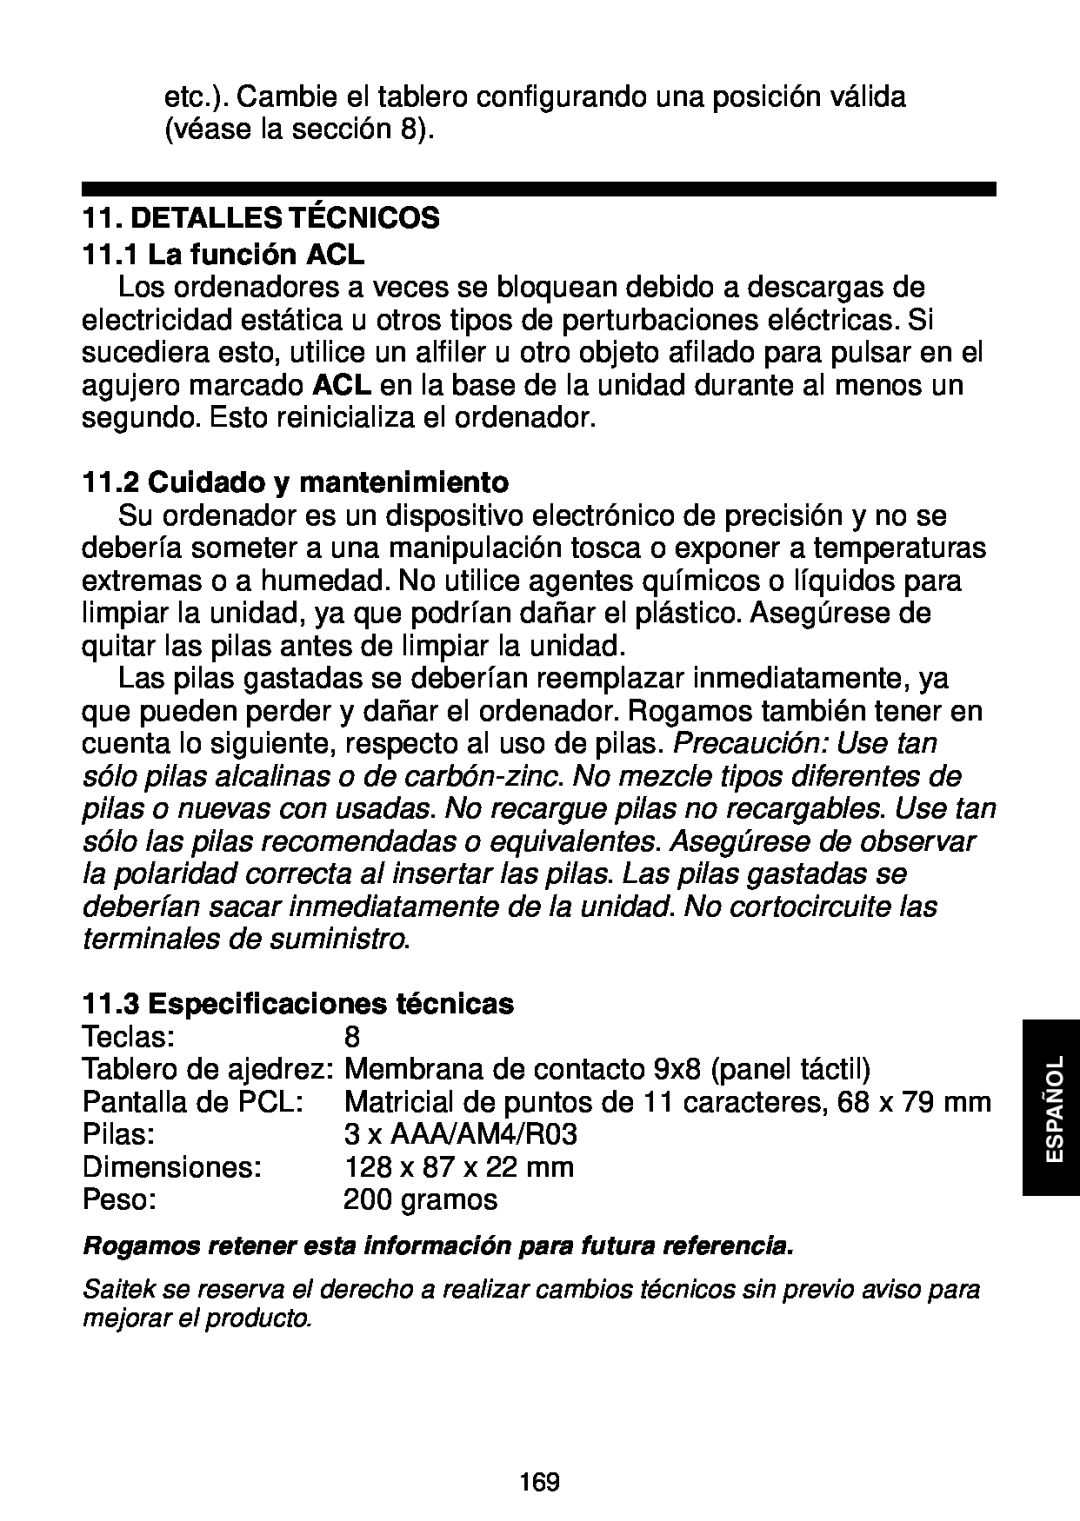 Saitek Maestro Travel Chess Computer manual DETALLES TÉCNICOS 11.1 La función ACL, Cuidado y mantenimiento 